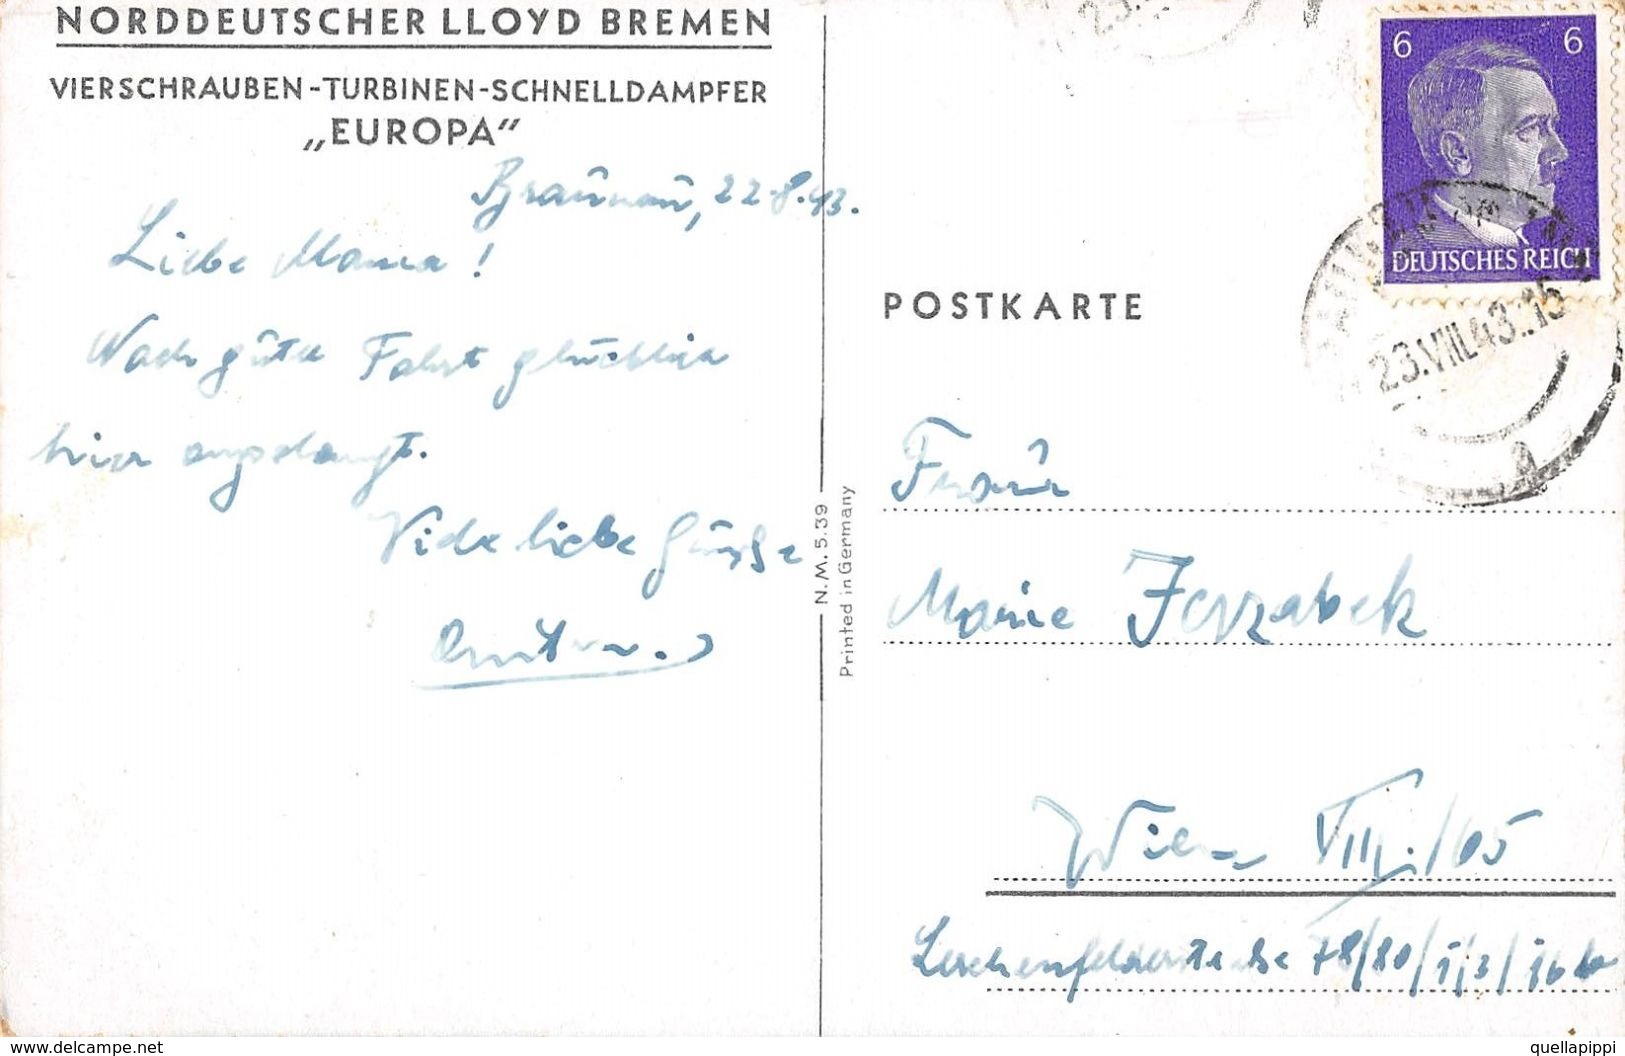 07196 "NORDDEUTSCHER LLOYD BREM-VIERSCHRAUBEN-TURBINEN-SCHNELDAMPFER-EUROPA" CART SPED 1943 BOLLO HITLER - Bancos